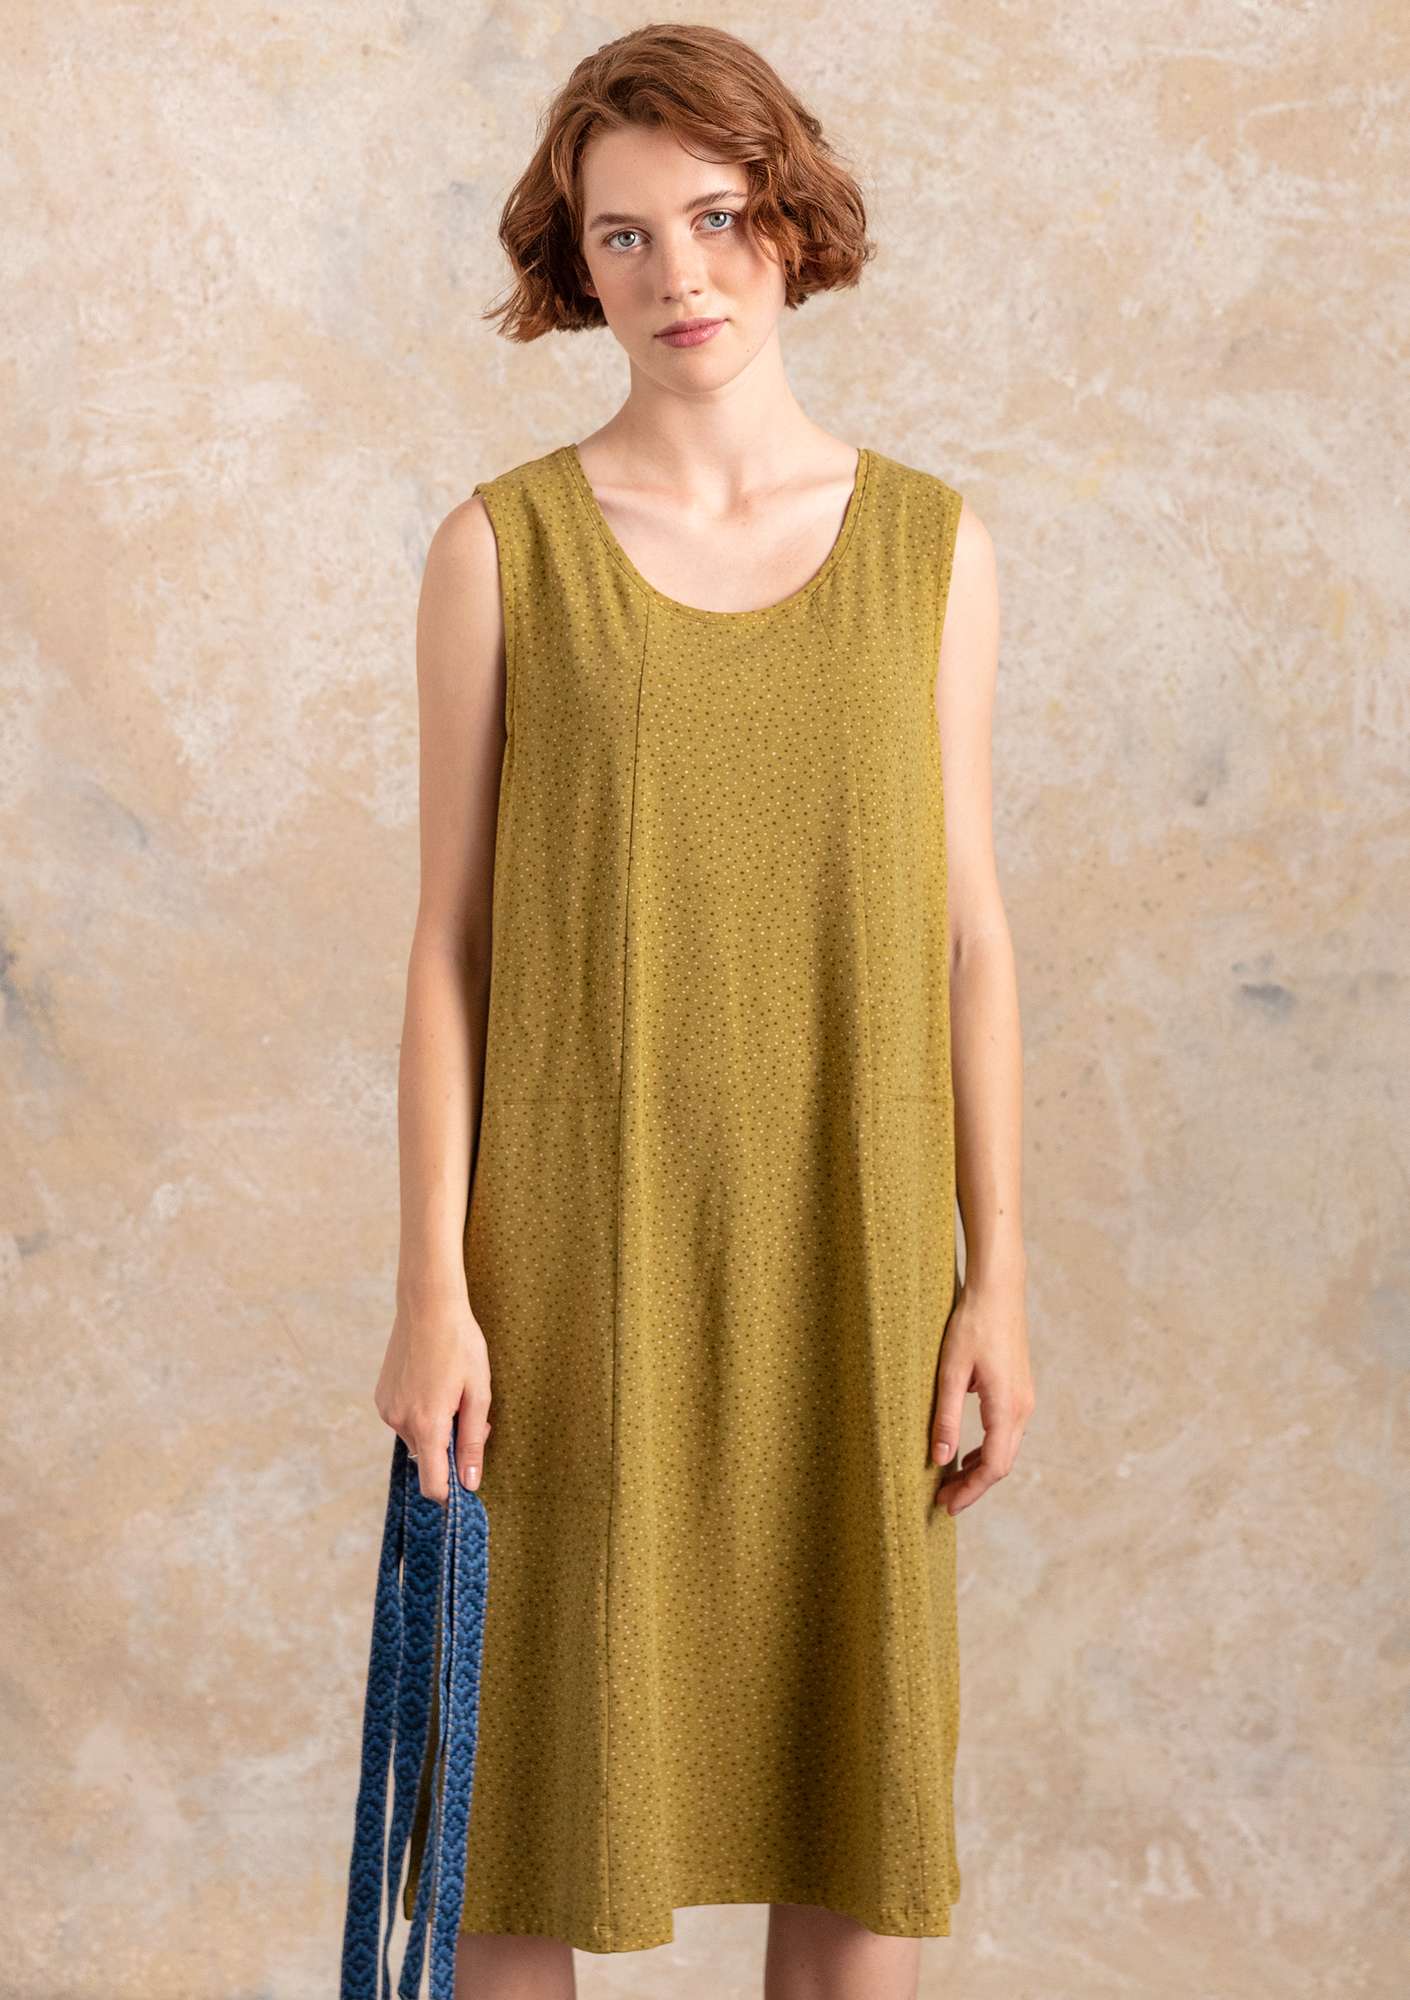 Iliana jersey dress olive/patterned